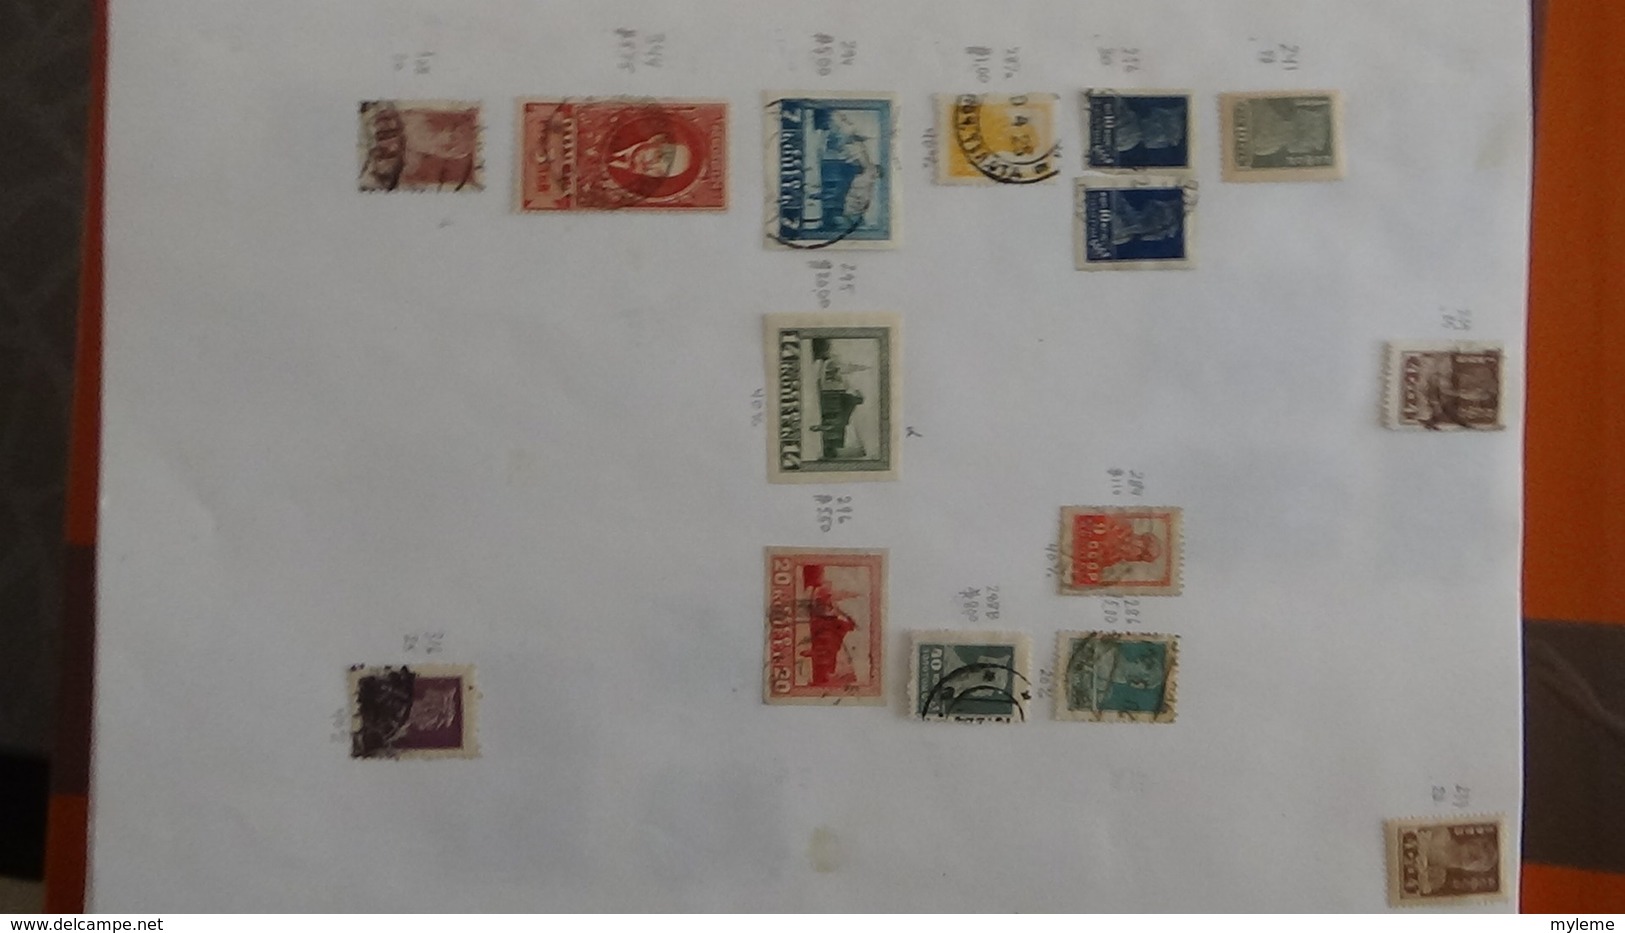 A256 Cahier de timbres de Russie  !!! Voir commentaires